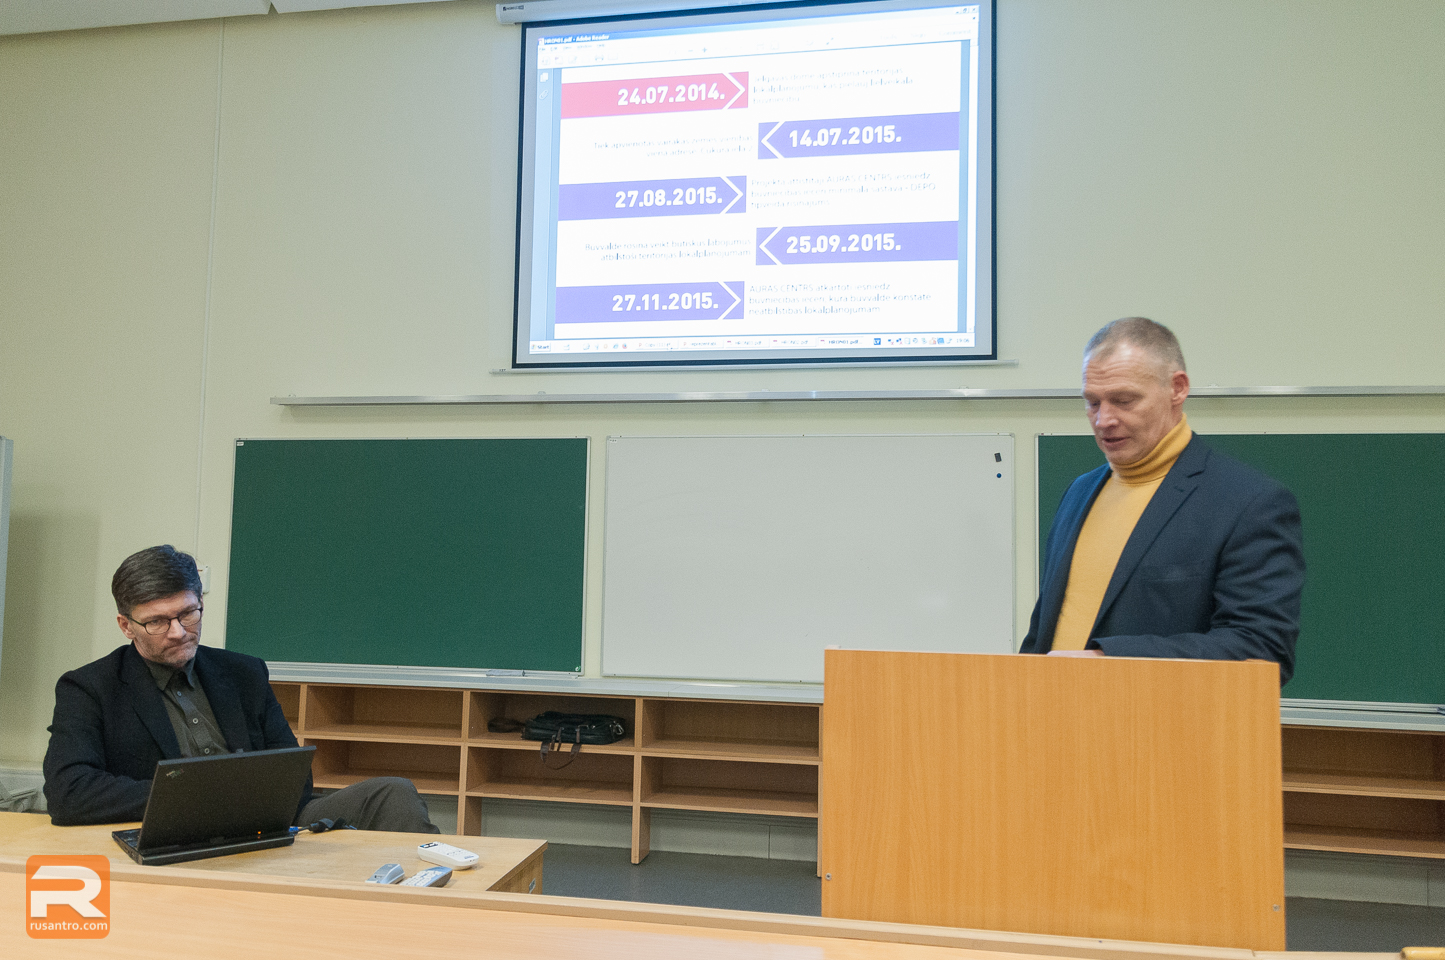 Arhitekts Ingurds Lazdiņš prezentē alternatīvo priekšlikumu "Depo" veikala projektam